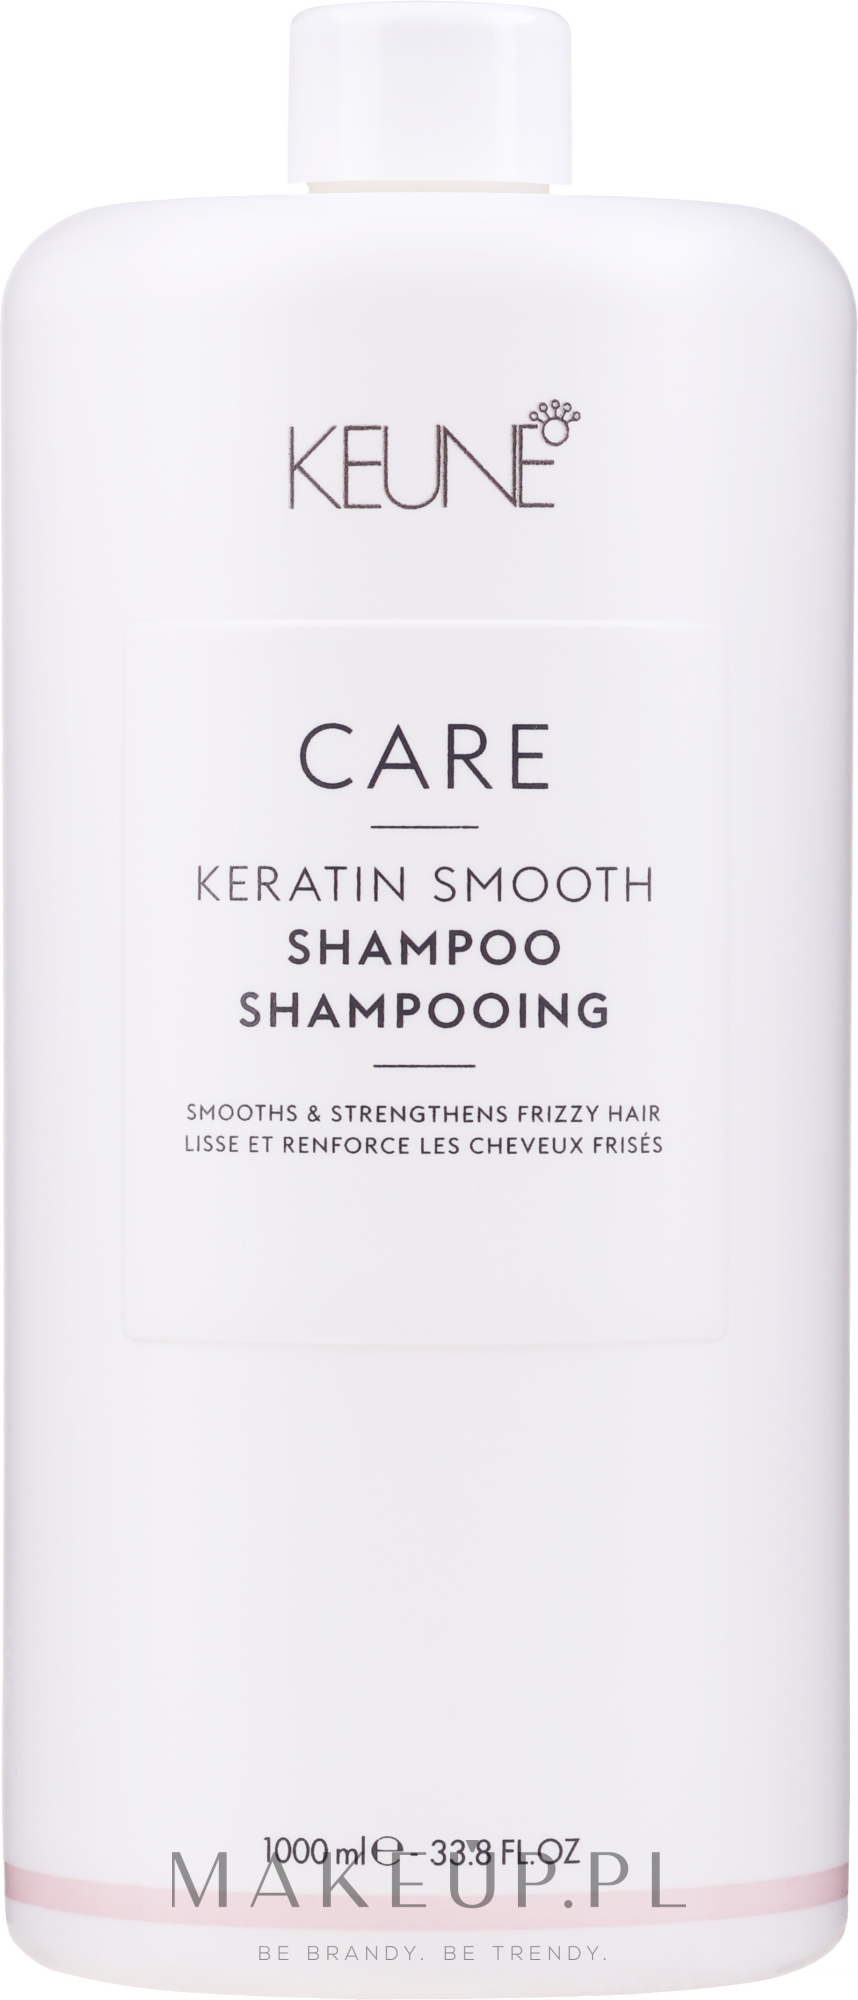 keune szampon po keratynowym prostowaniu